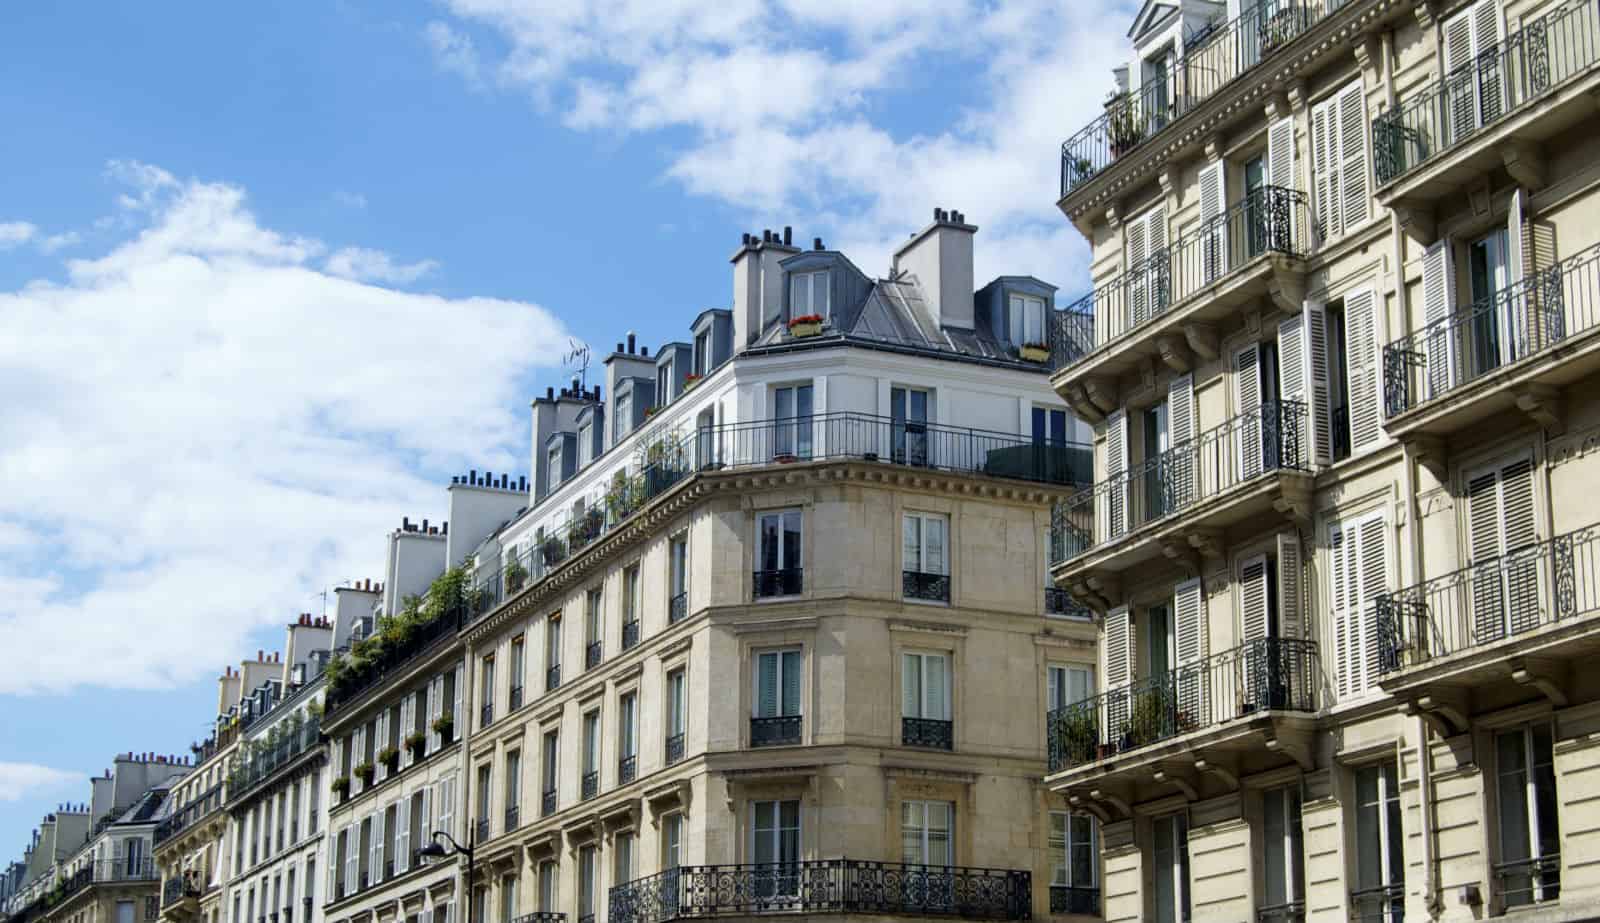 HiP Paris blog, Rude French, Parisian buildings architecture